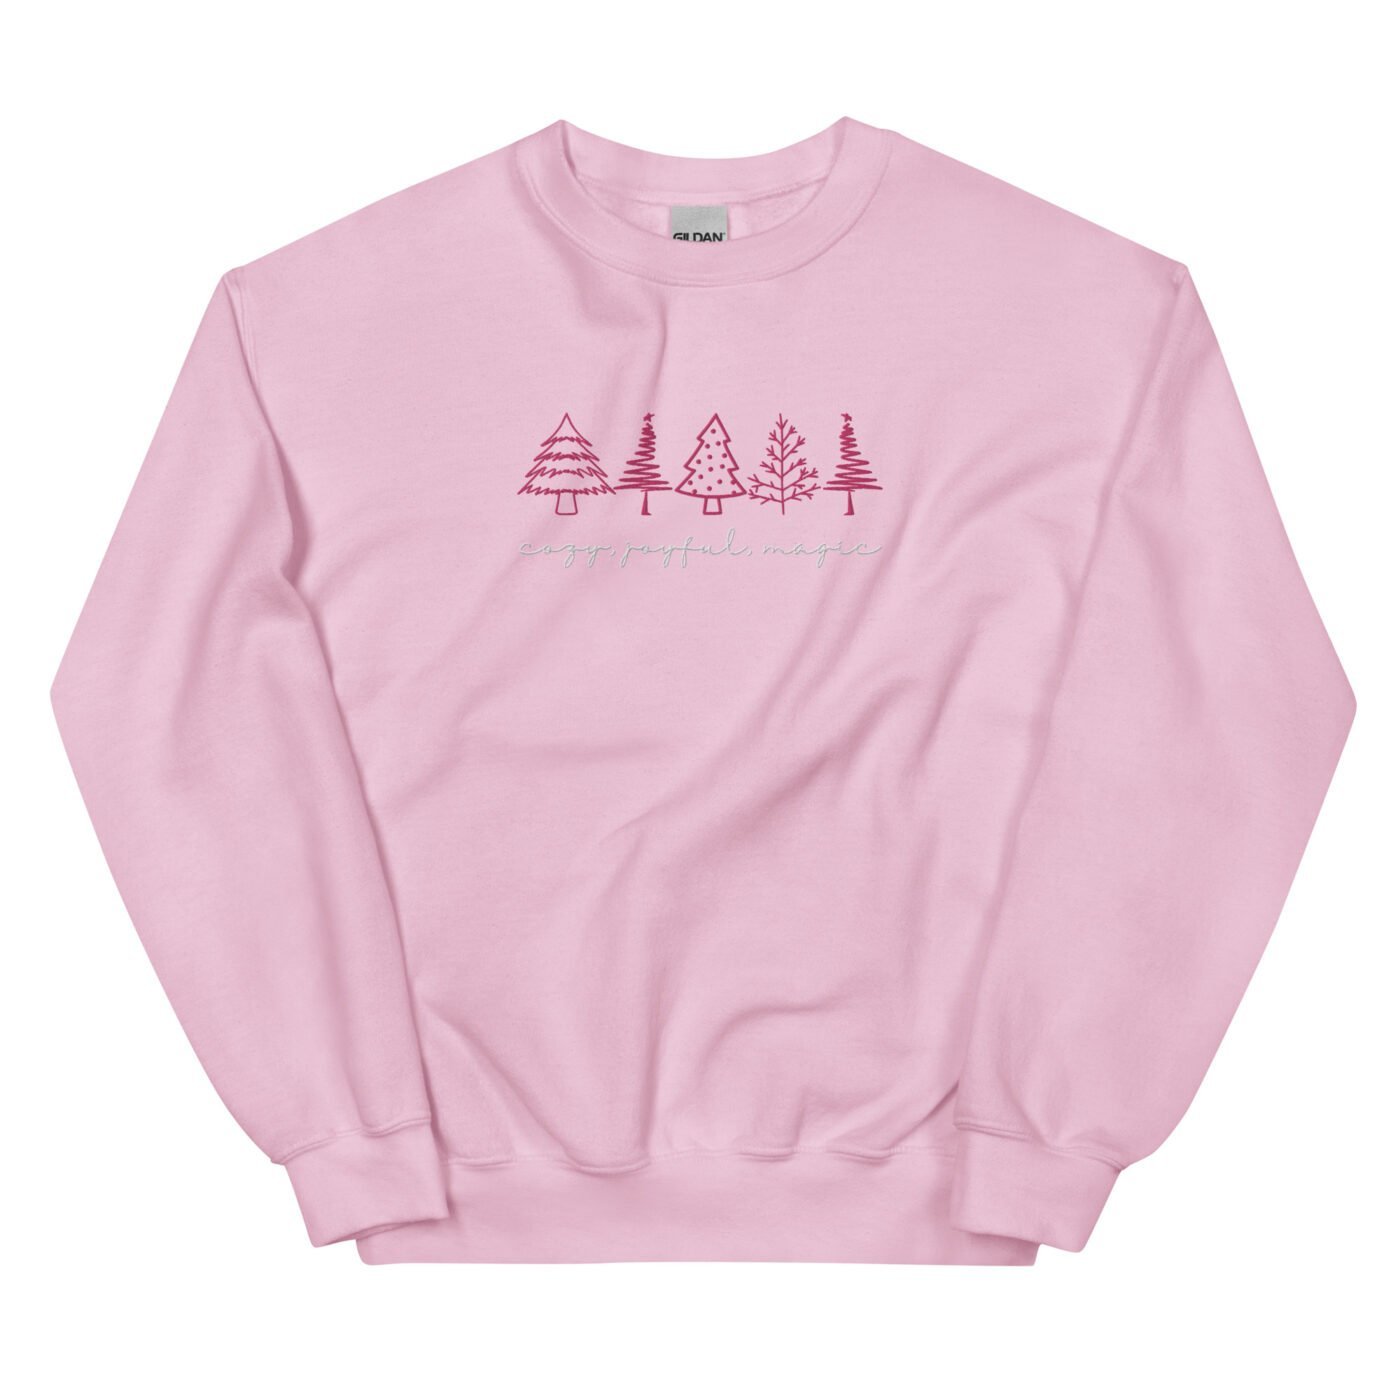 unisex crew neck sweatshirt light pink front 6525d87266263.jpg